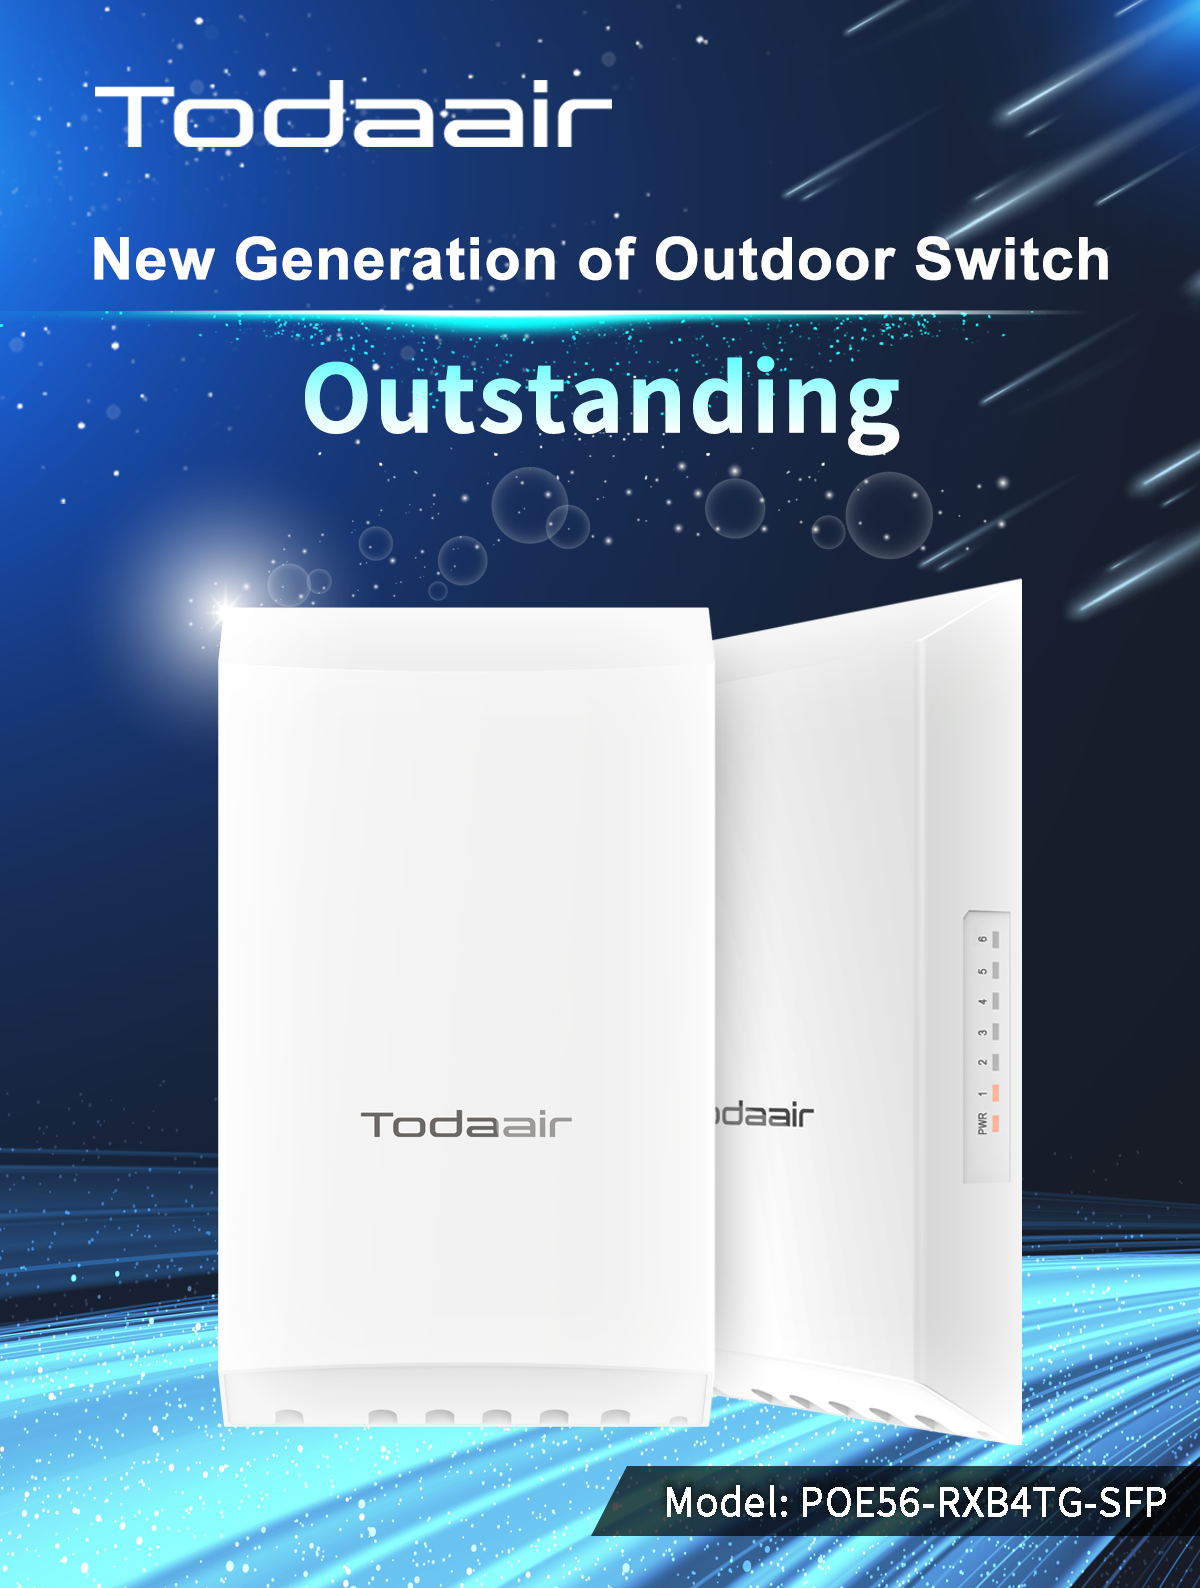 Todaair waterproof outdoor network Switch